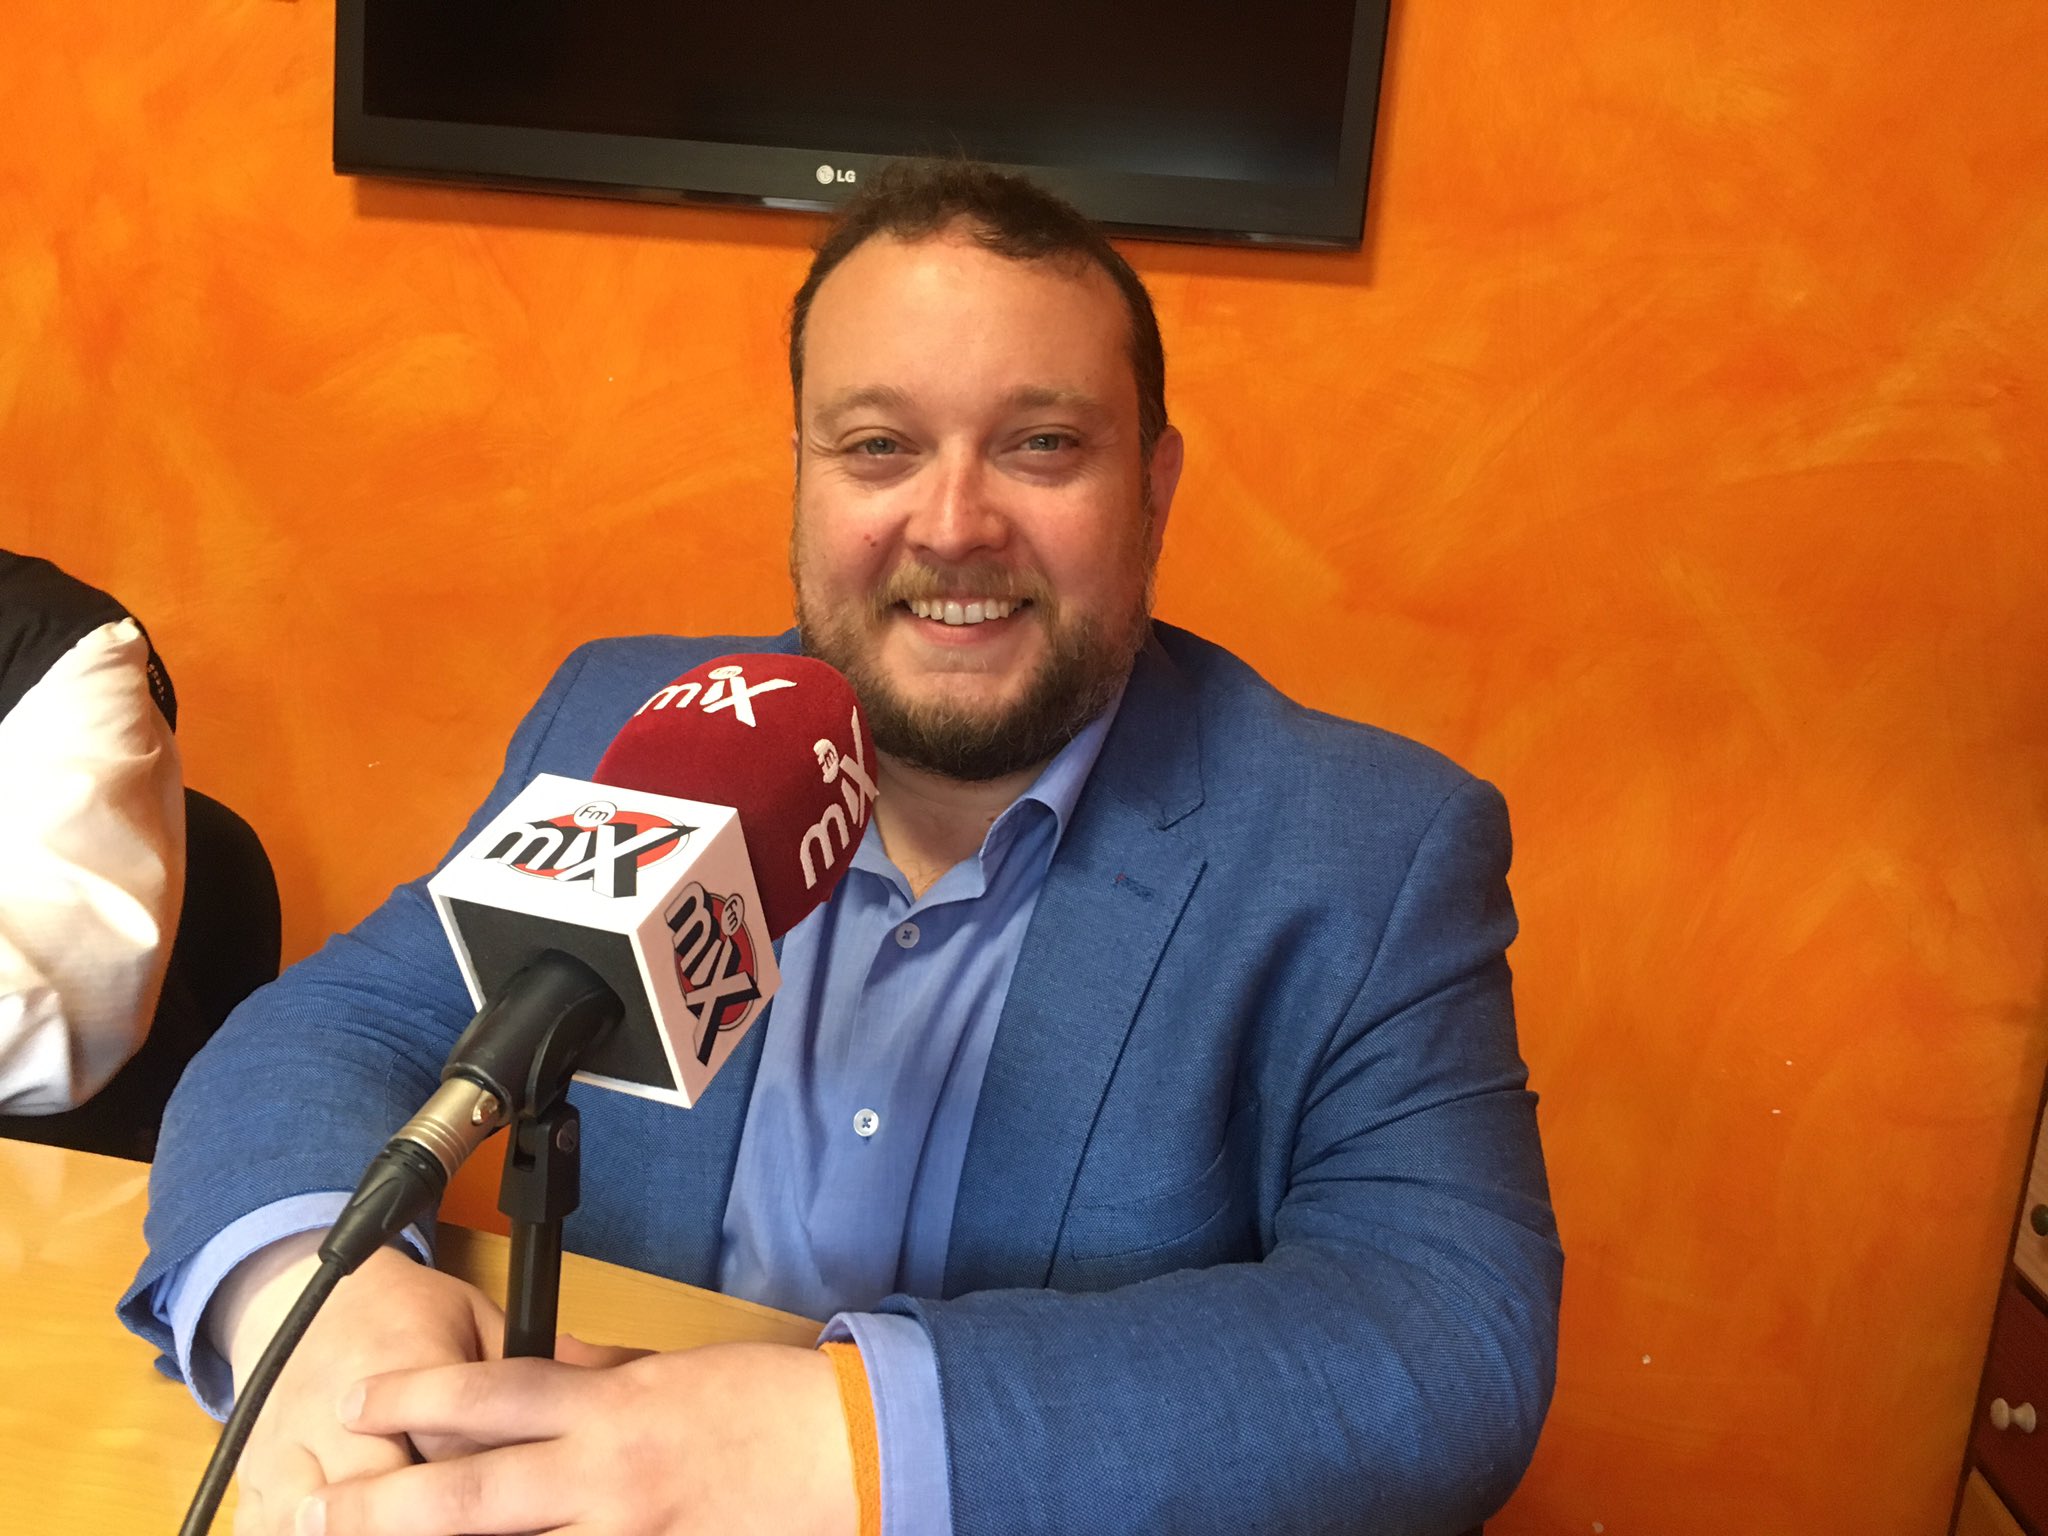 Entrevista a Rubén Gómez, candidato de Cs Cantabria al Congreso